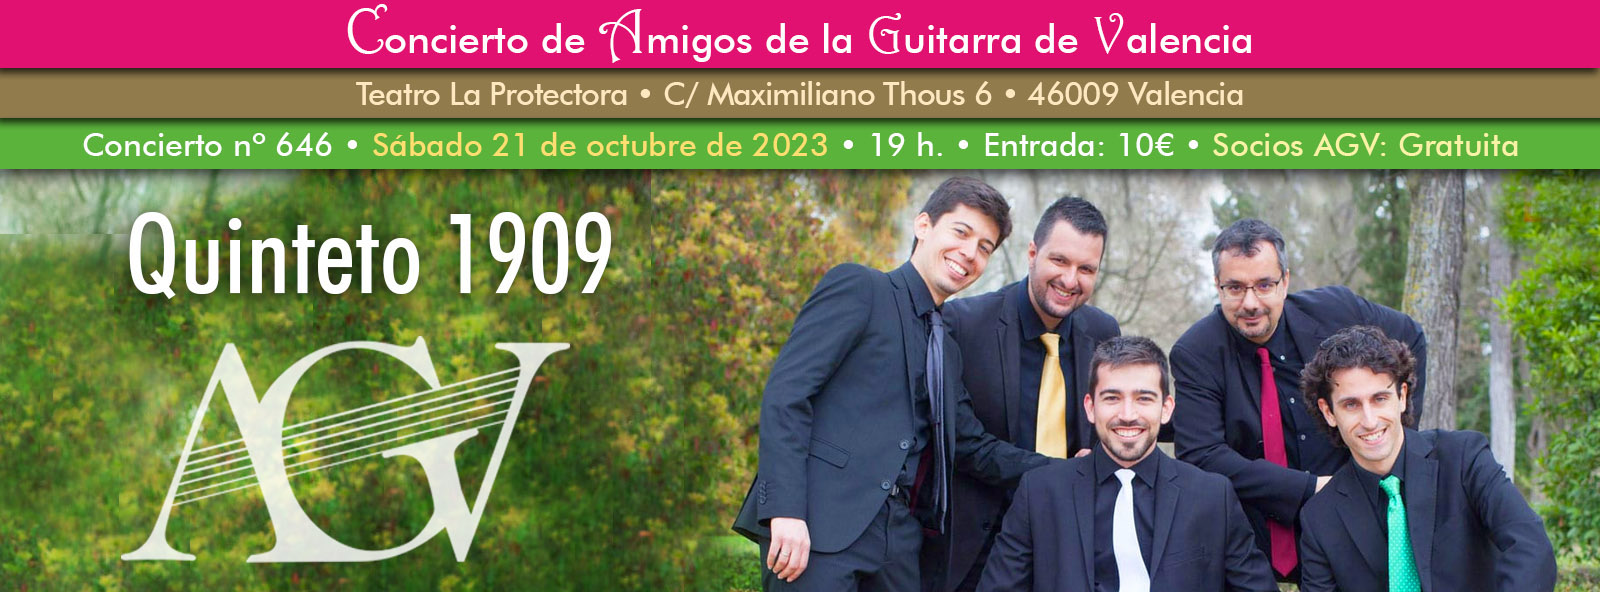 Concierto de guitarra del Quinteto 1909 en Amigos de la Guitarra de Valencia